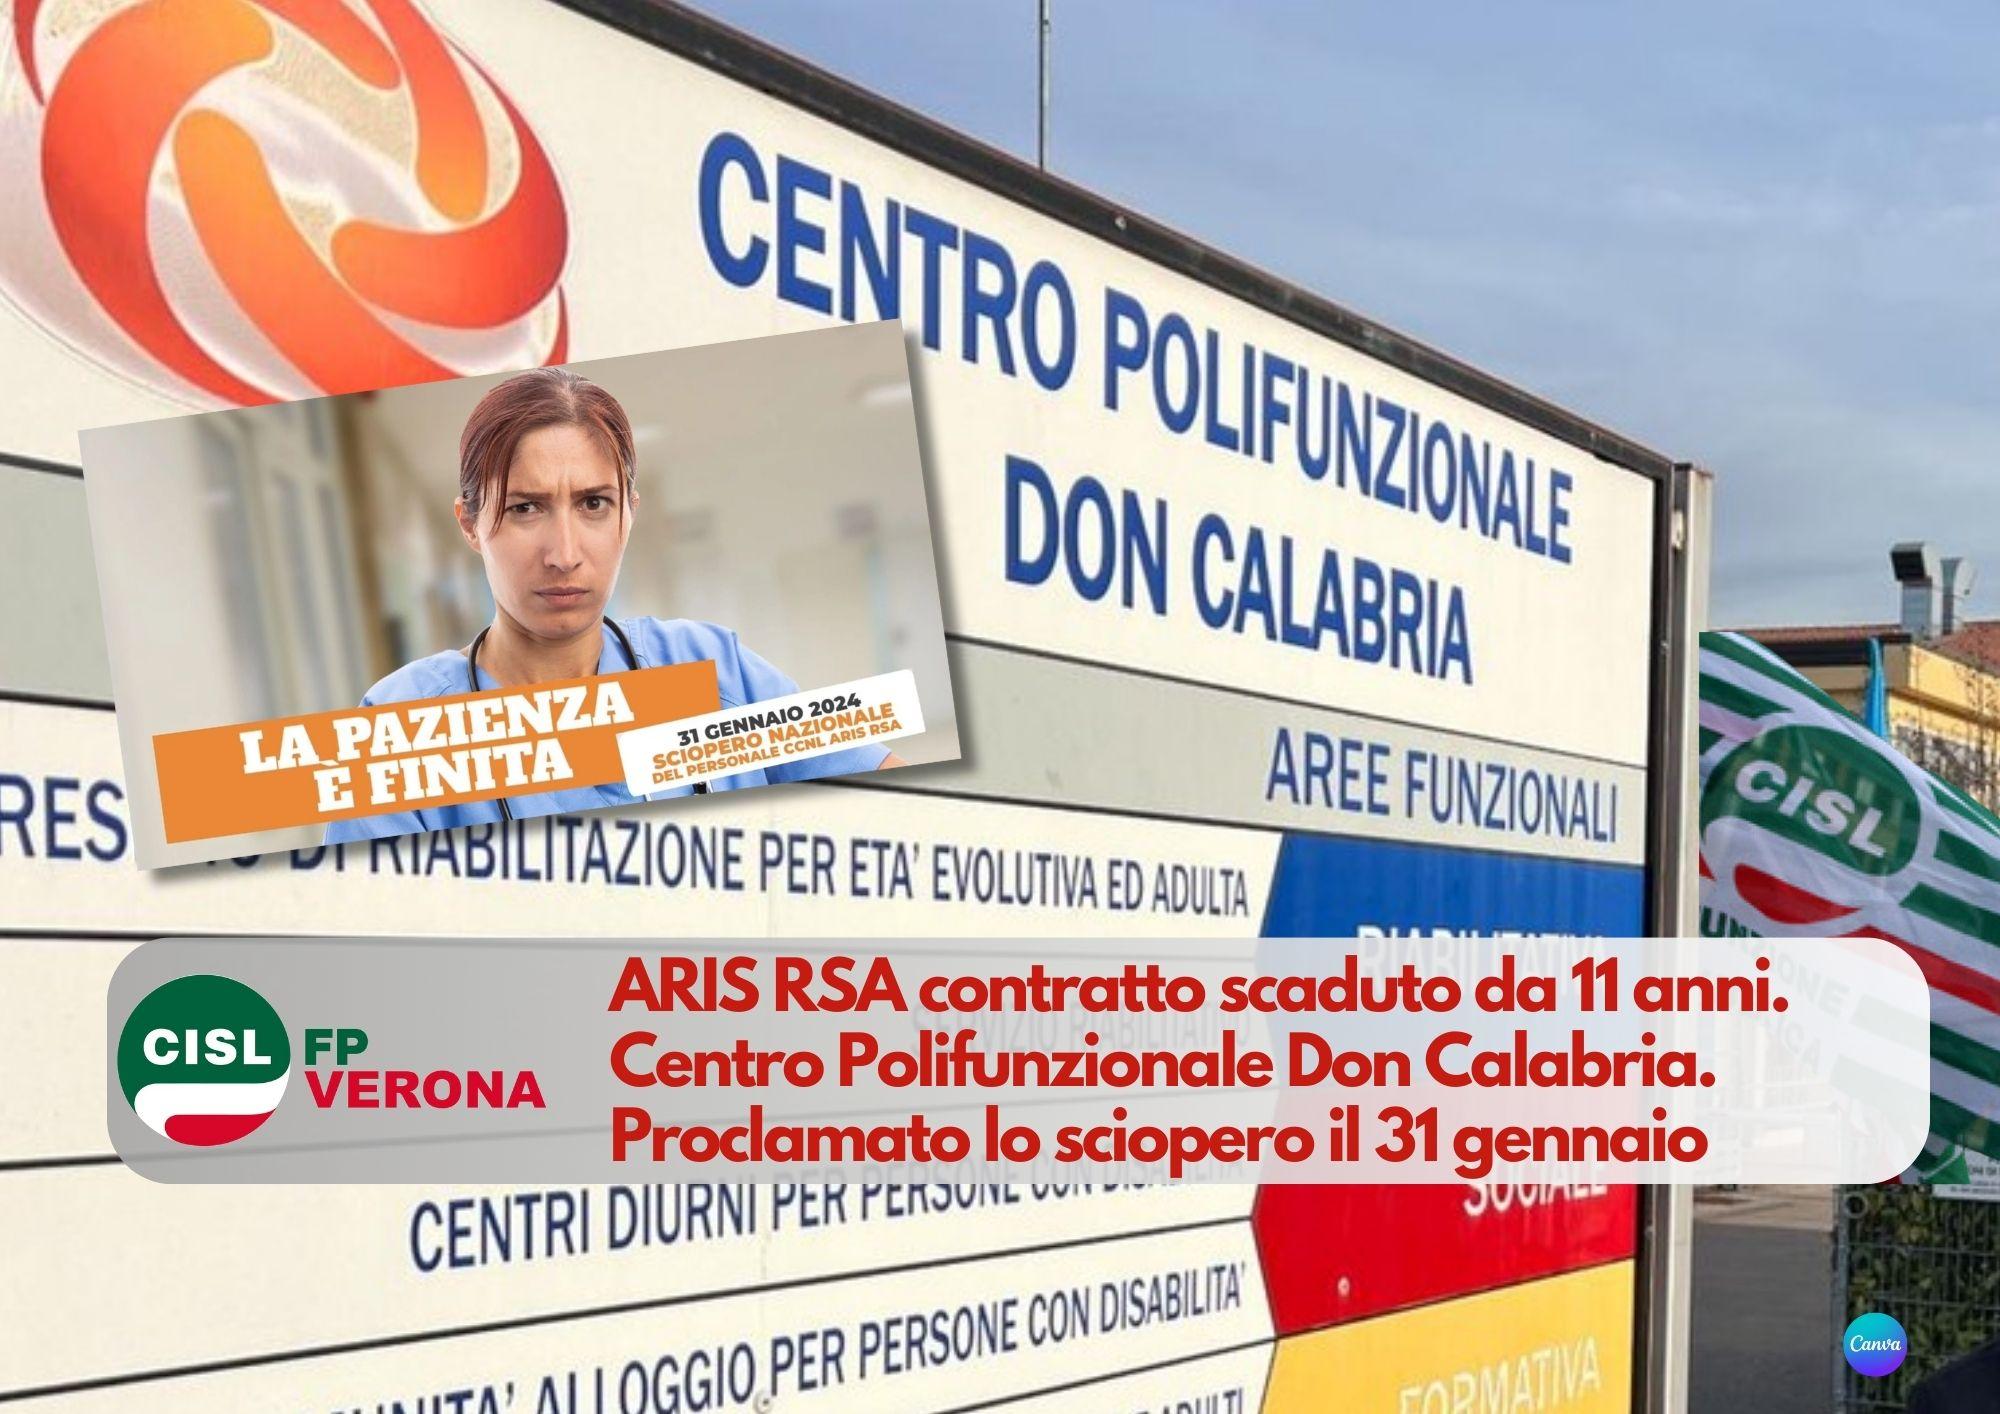 CISL FP Verona. Centro Polifunzionale Don Calabria. Proclamato lo sciopero il 31 gennaio